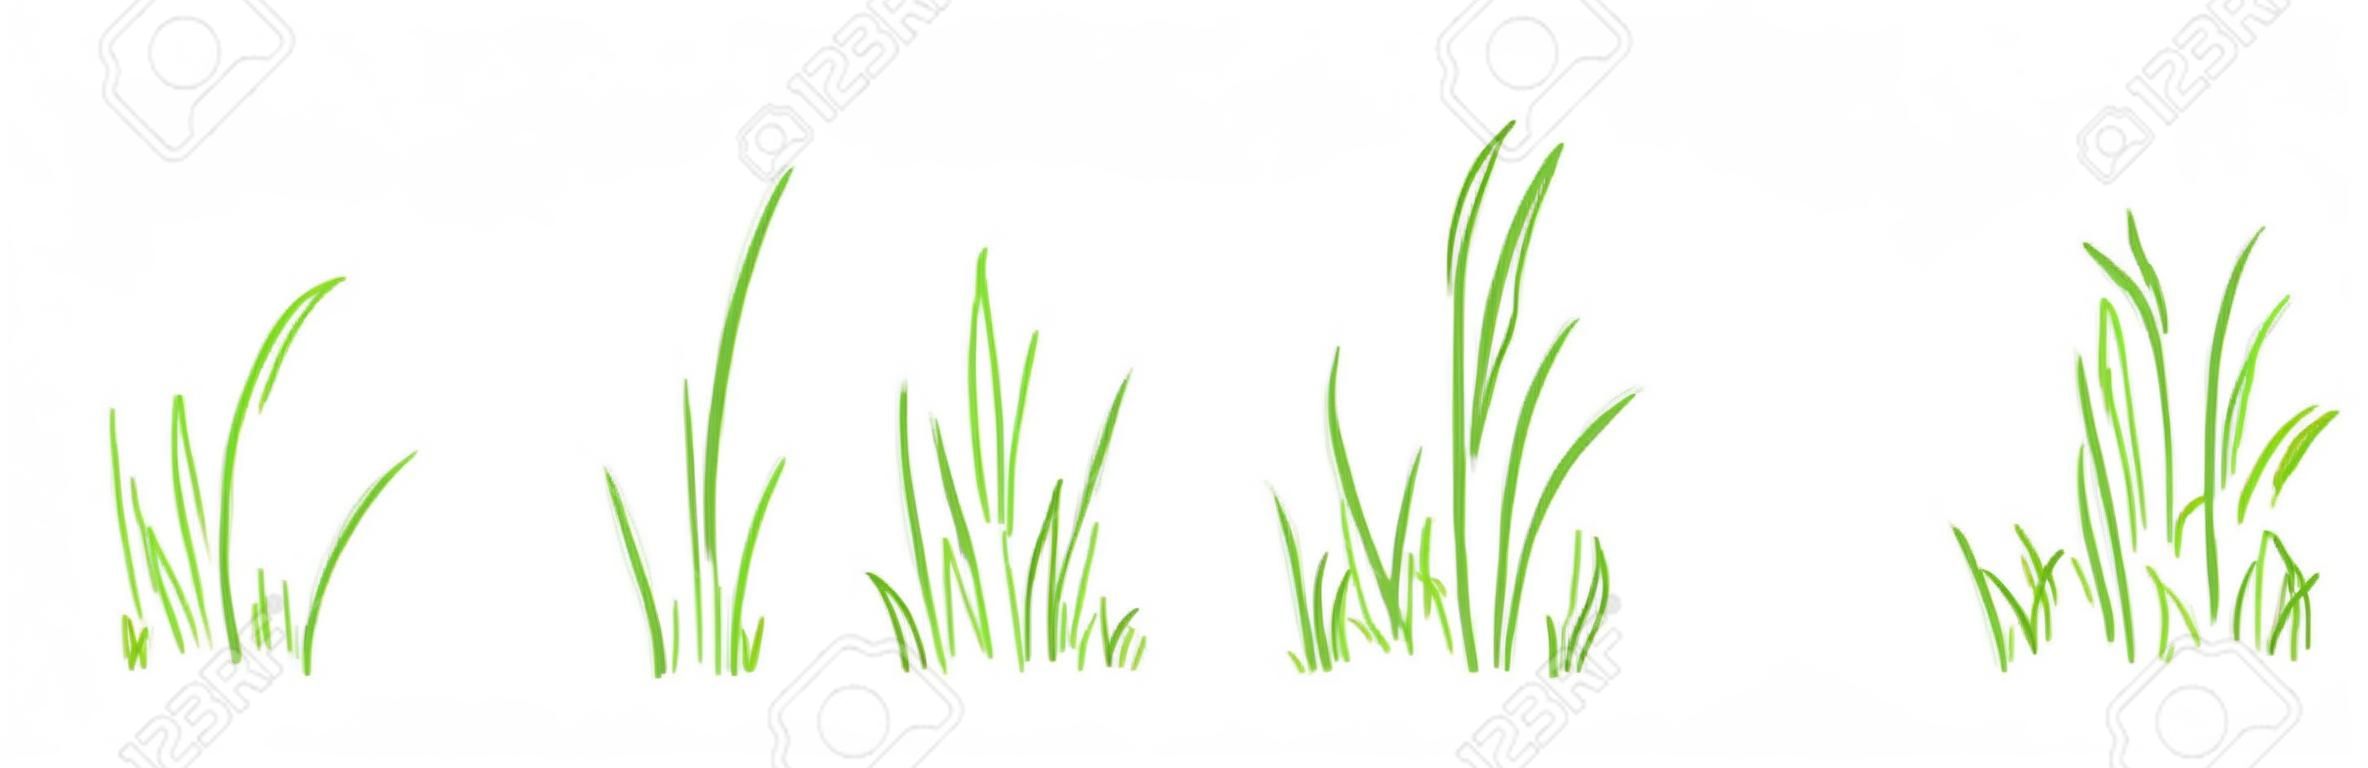 Ensemble de vecteurs de ligne de brousse d'herbe dessinés à la main, éléments de croquis prairie et paysage, pelouse de griffonnage, conception de contour de bordure verte isolée sur fond blanc. Illustration de la nature